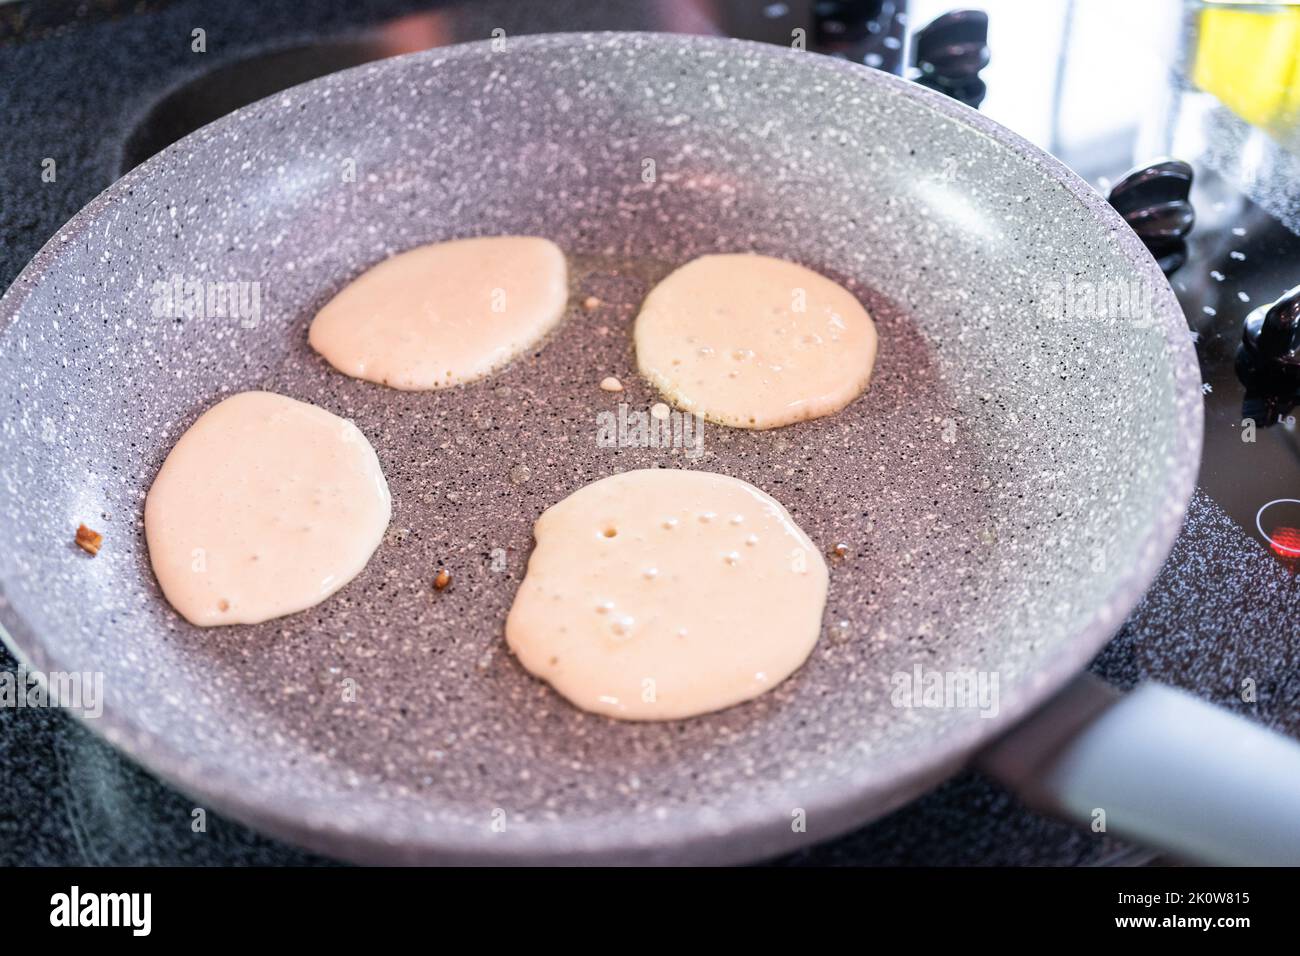 Making pancakes Stock Photo